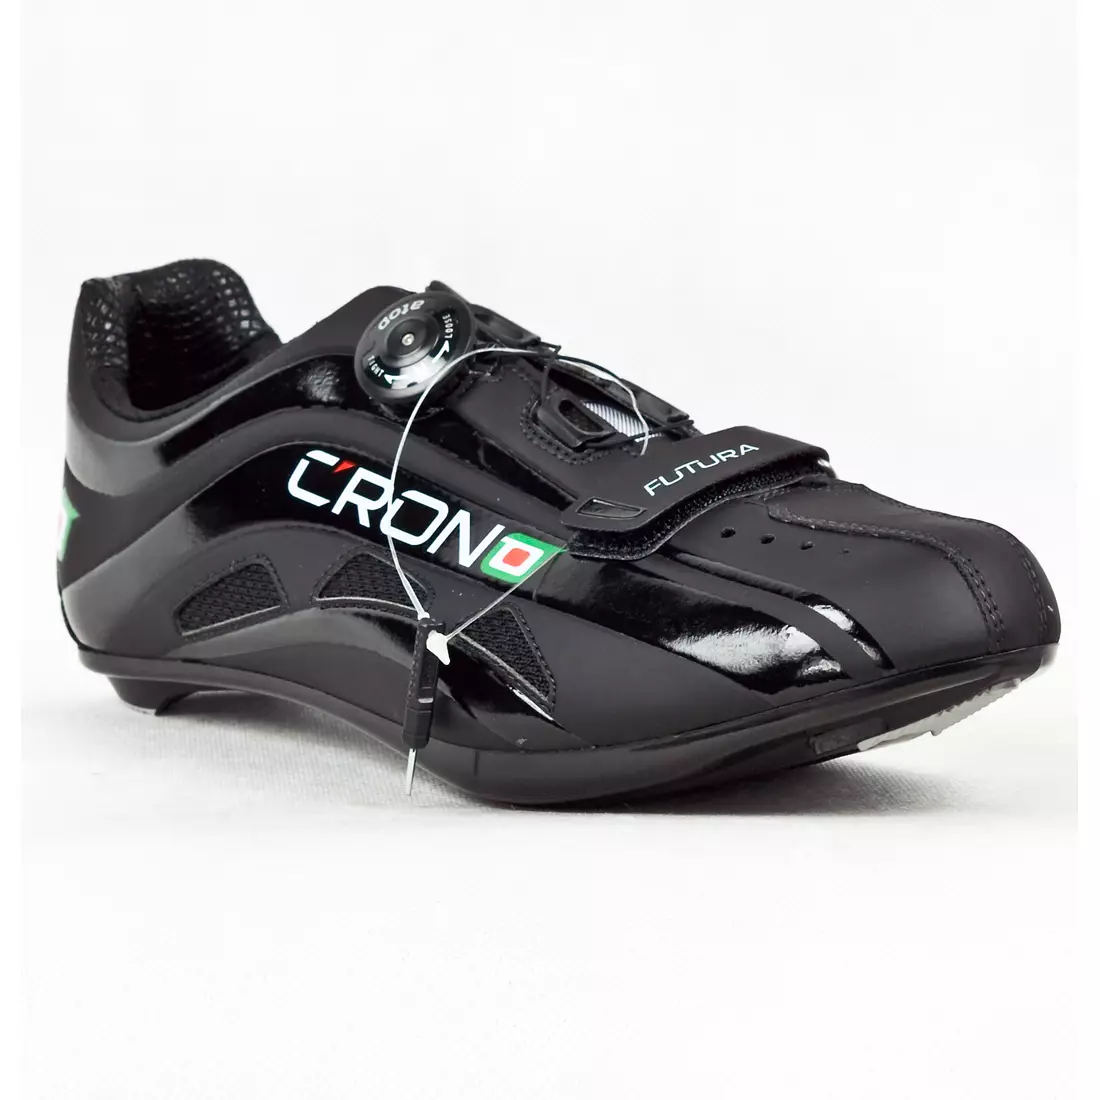 CRONO FUTURA NYLON - silniční cyklistické boty - barva: Černá